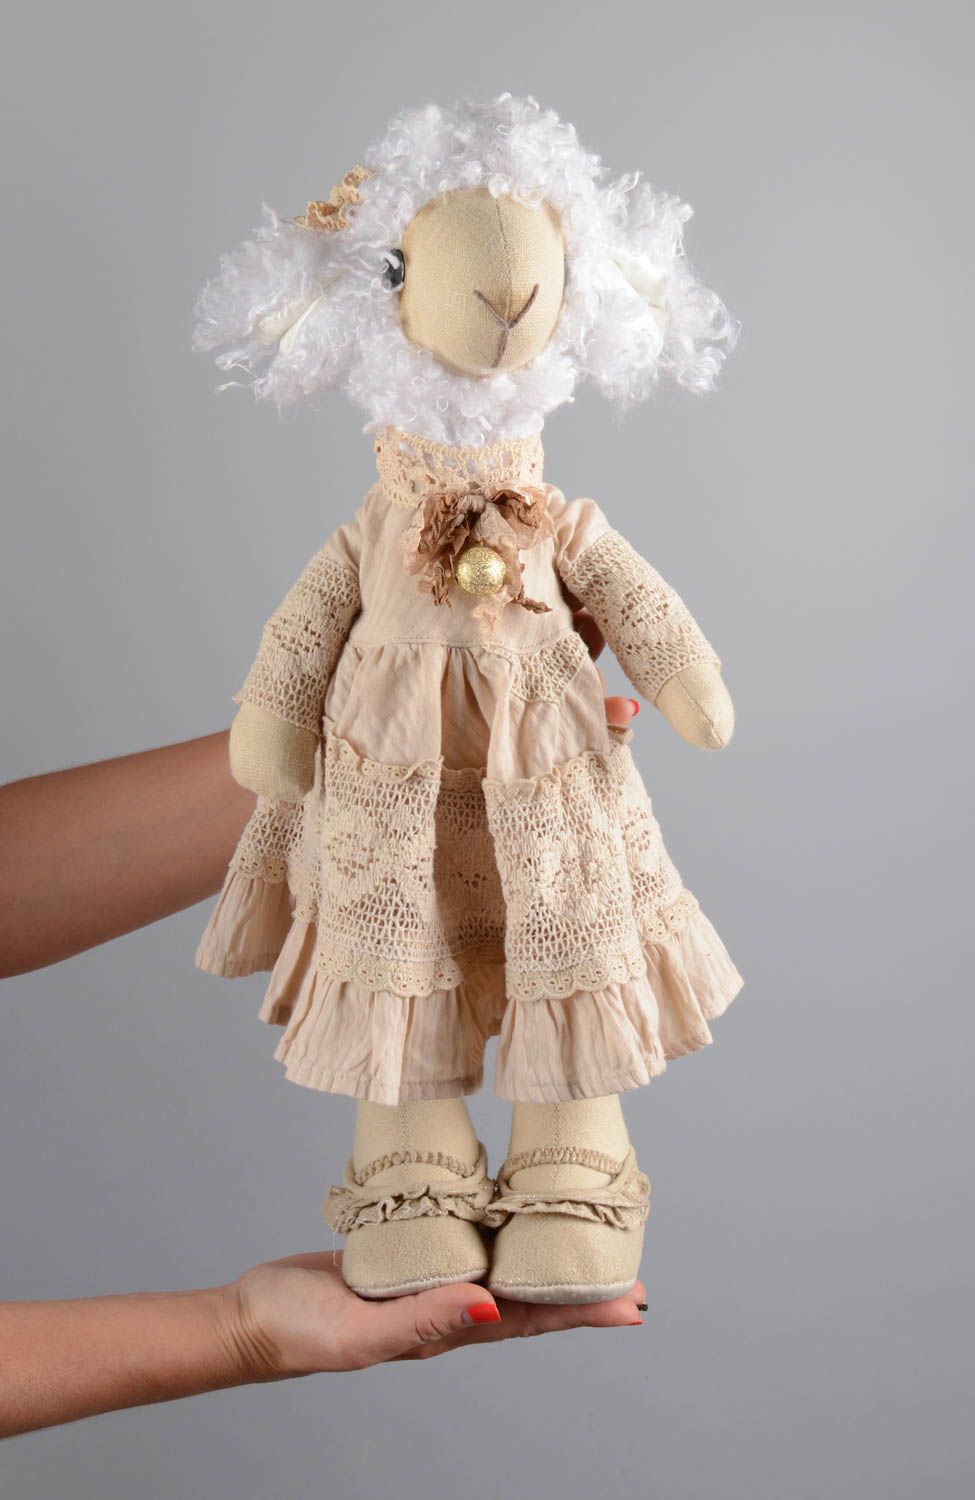 Stoff Kuscheltier Schaf im Kleid handmade Designer Spielzeug in Beige und Weiß foto 5